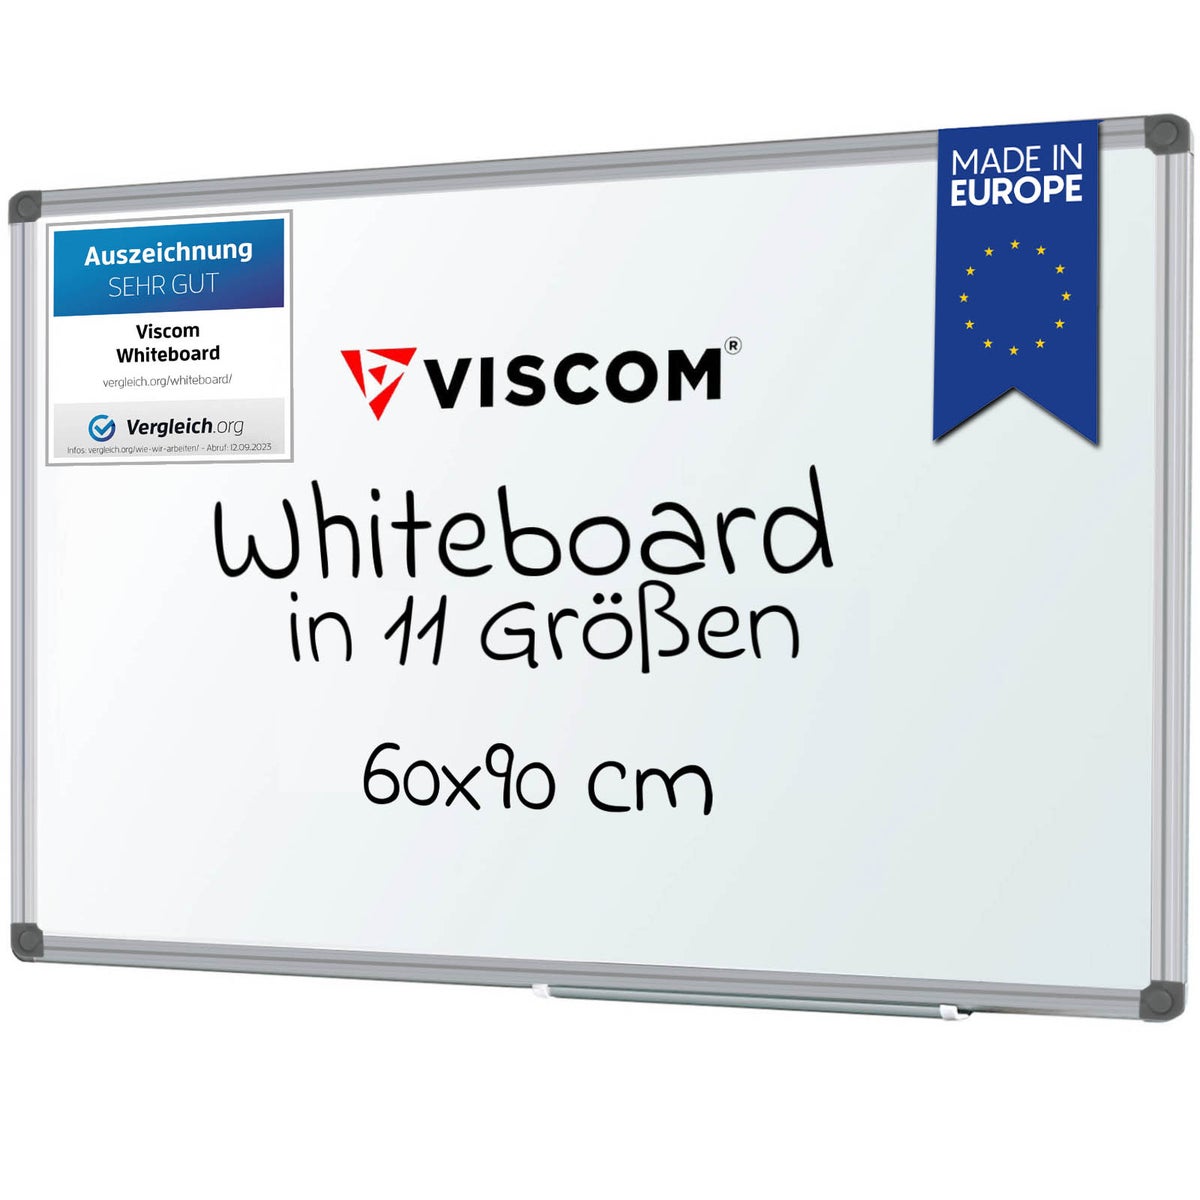 VISCOM Whiteboard magnetisch - 60 x 90 cm - Magnettafel für Büro & Zuhause - Magnetwand, kratzfest & beschreibbar - mit Aluminium-Rahmen - für Hoch- und Querformat